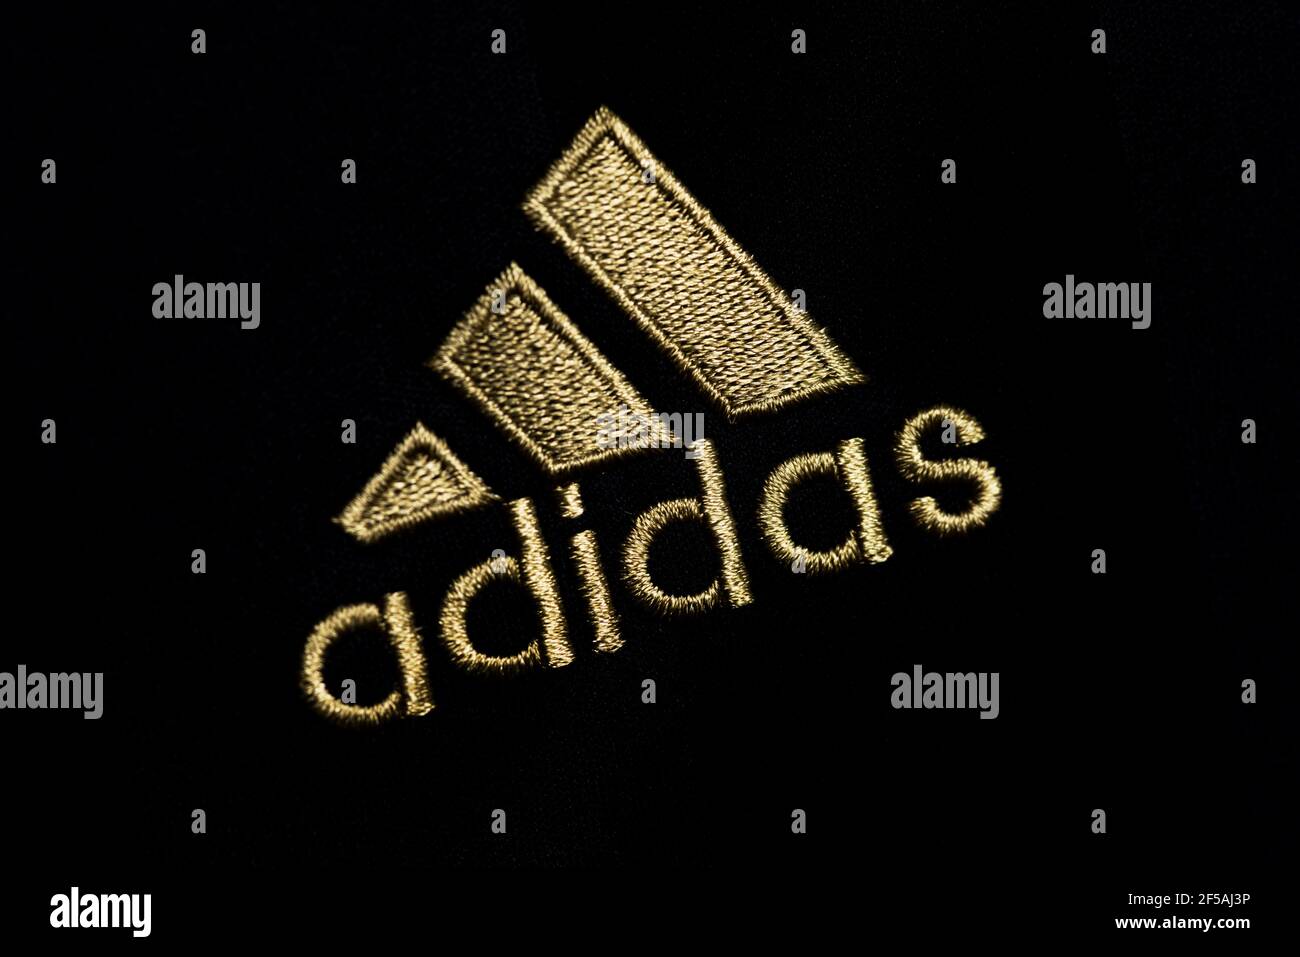 Logo de adidas e imágenes de alta resolución - Alamy